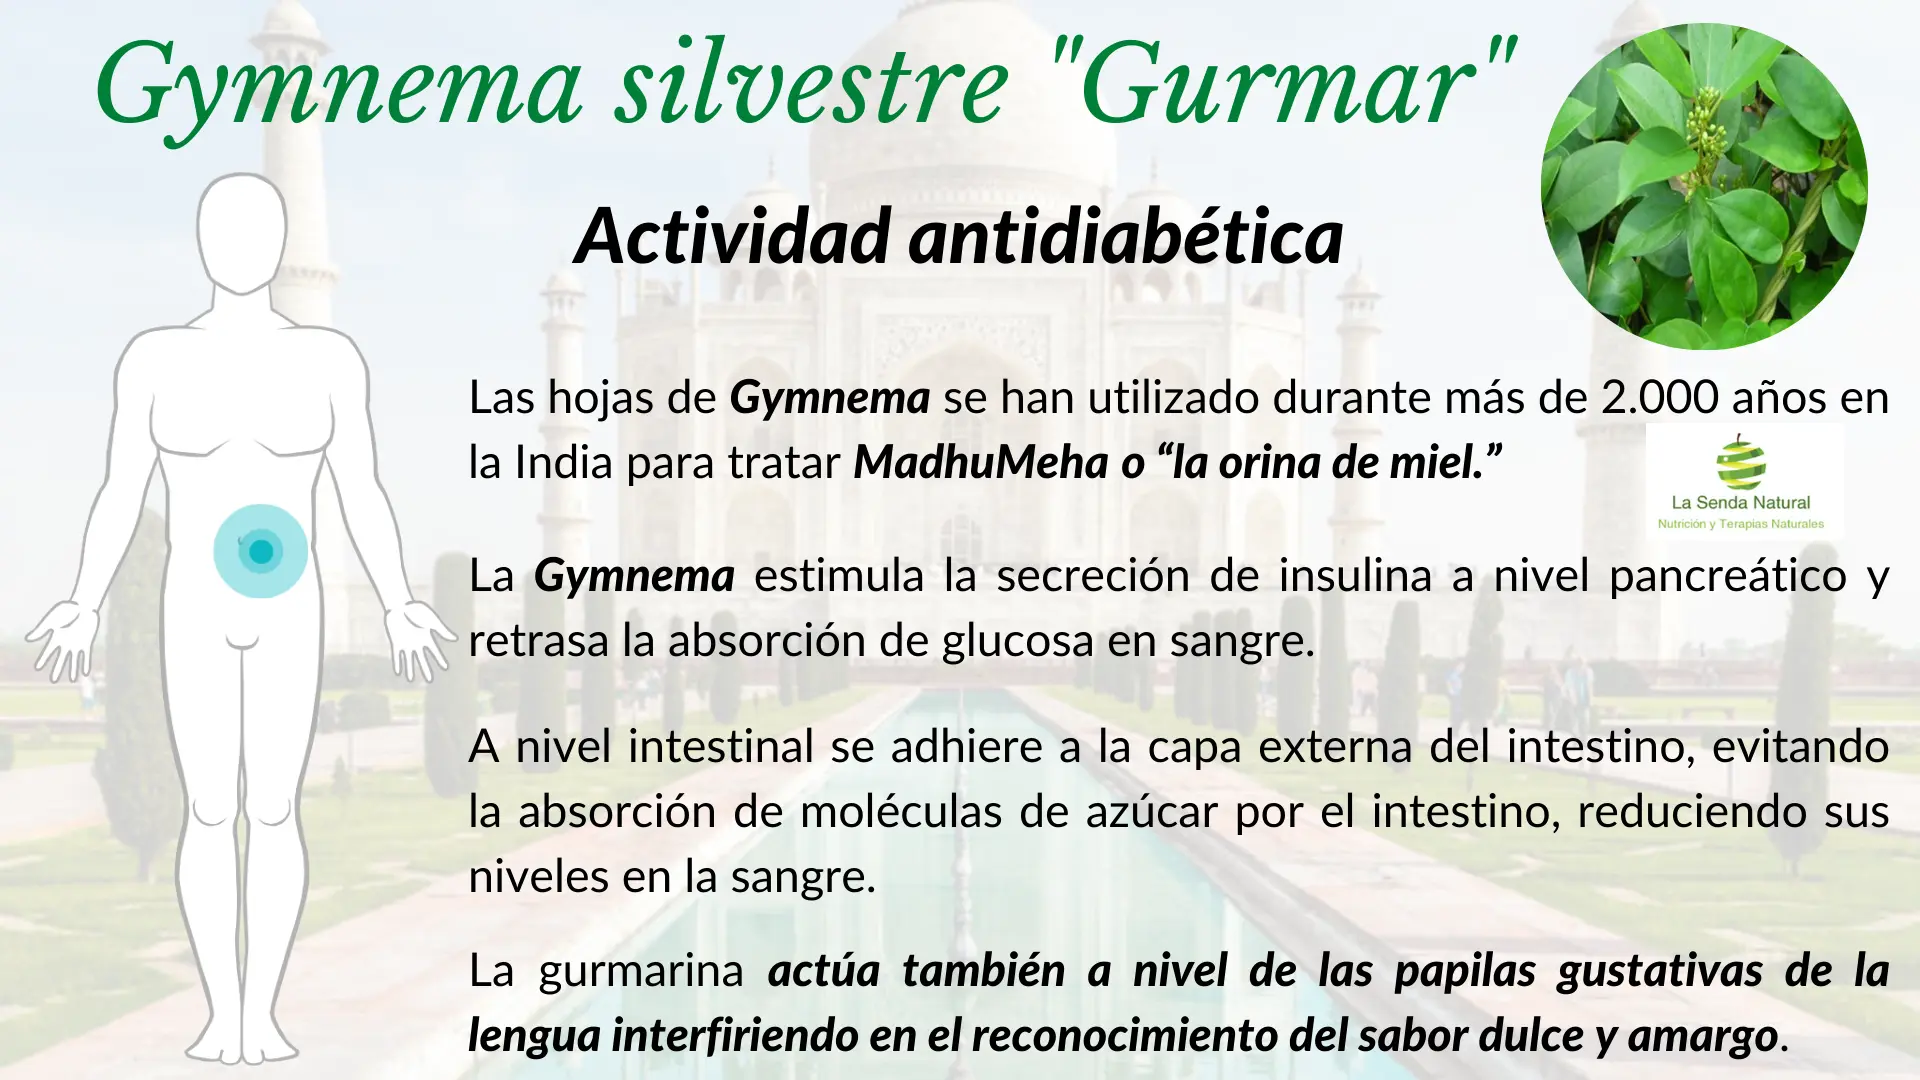 Gymnema y función anti diabética